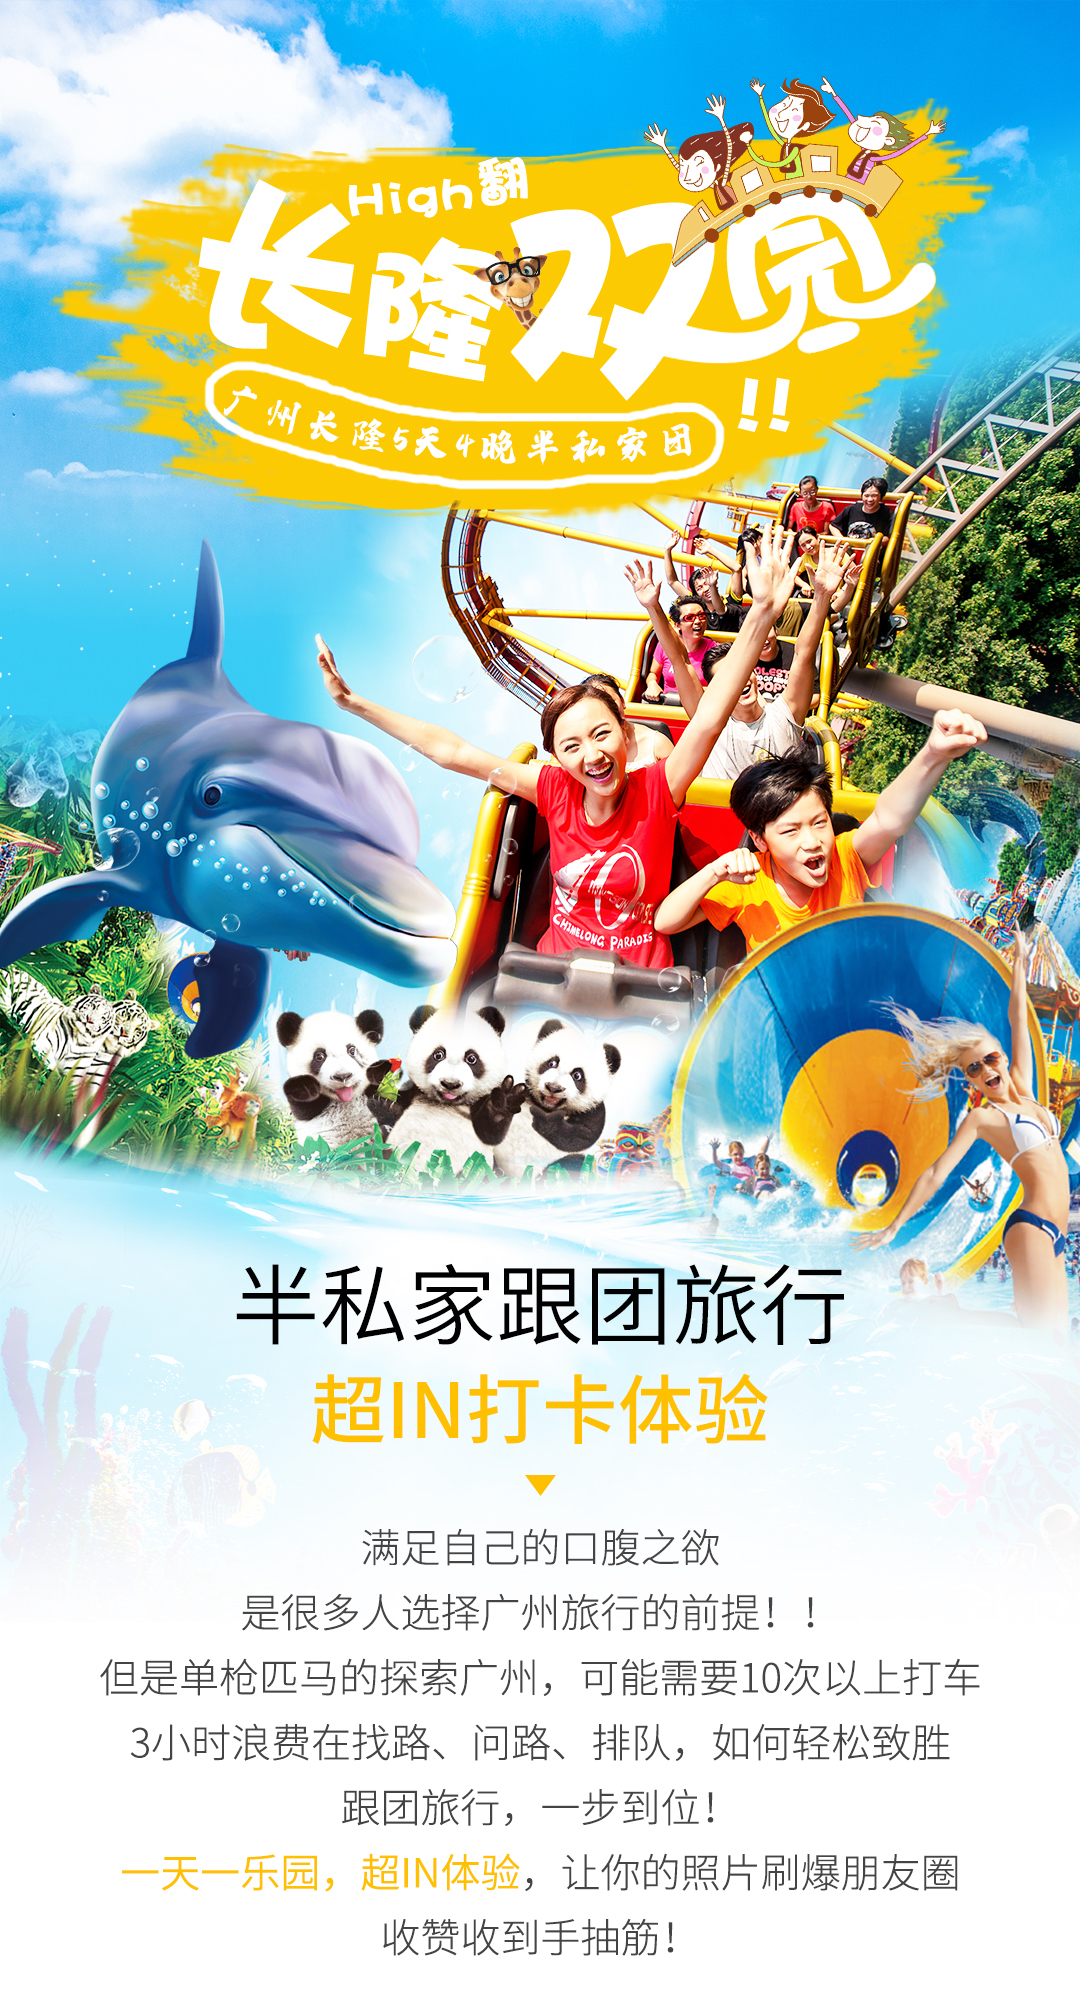 广州长隆野生动物世界 长隆欢乐世界5日游·嗨玩广州长隆两大乐园·见